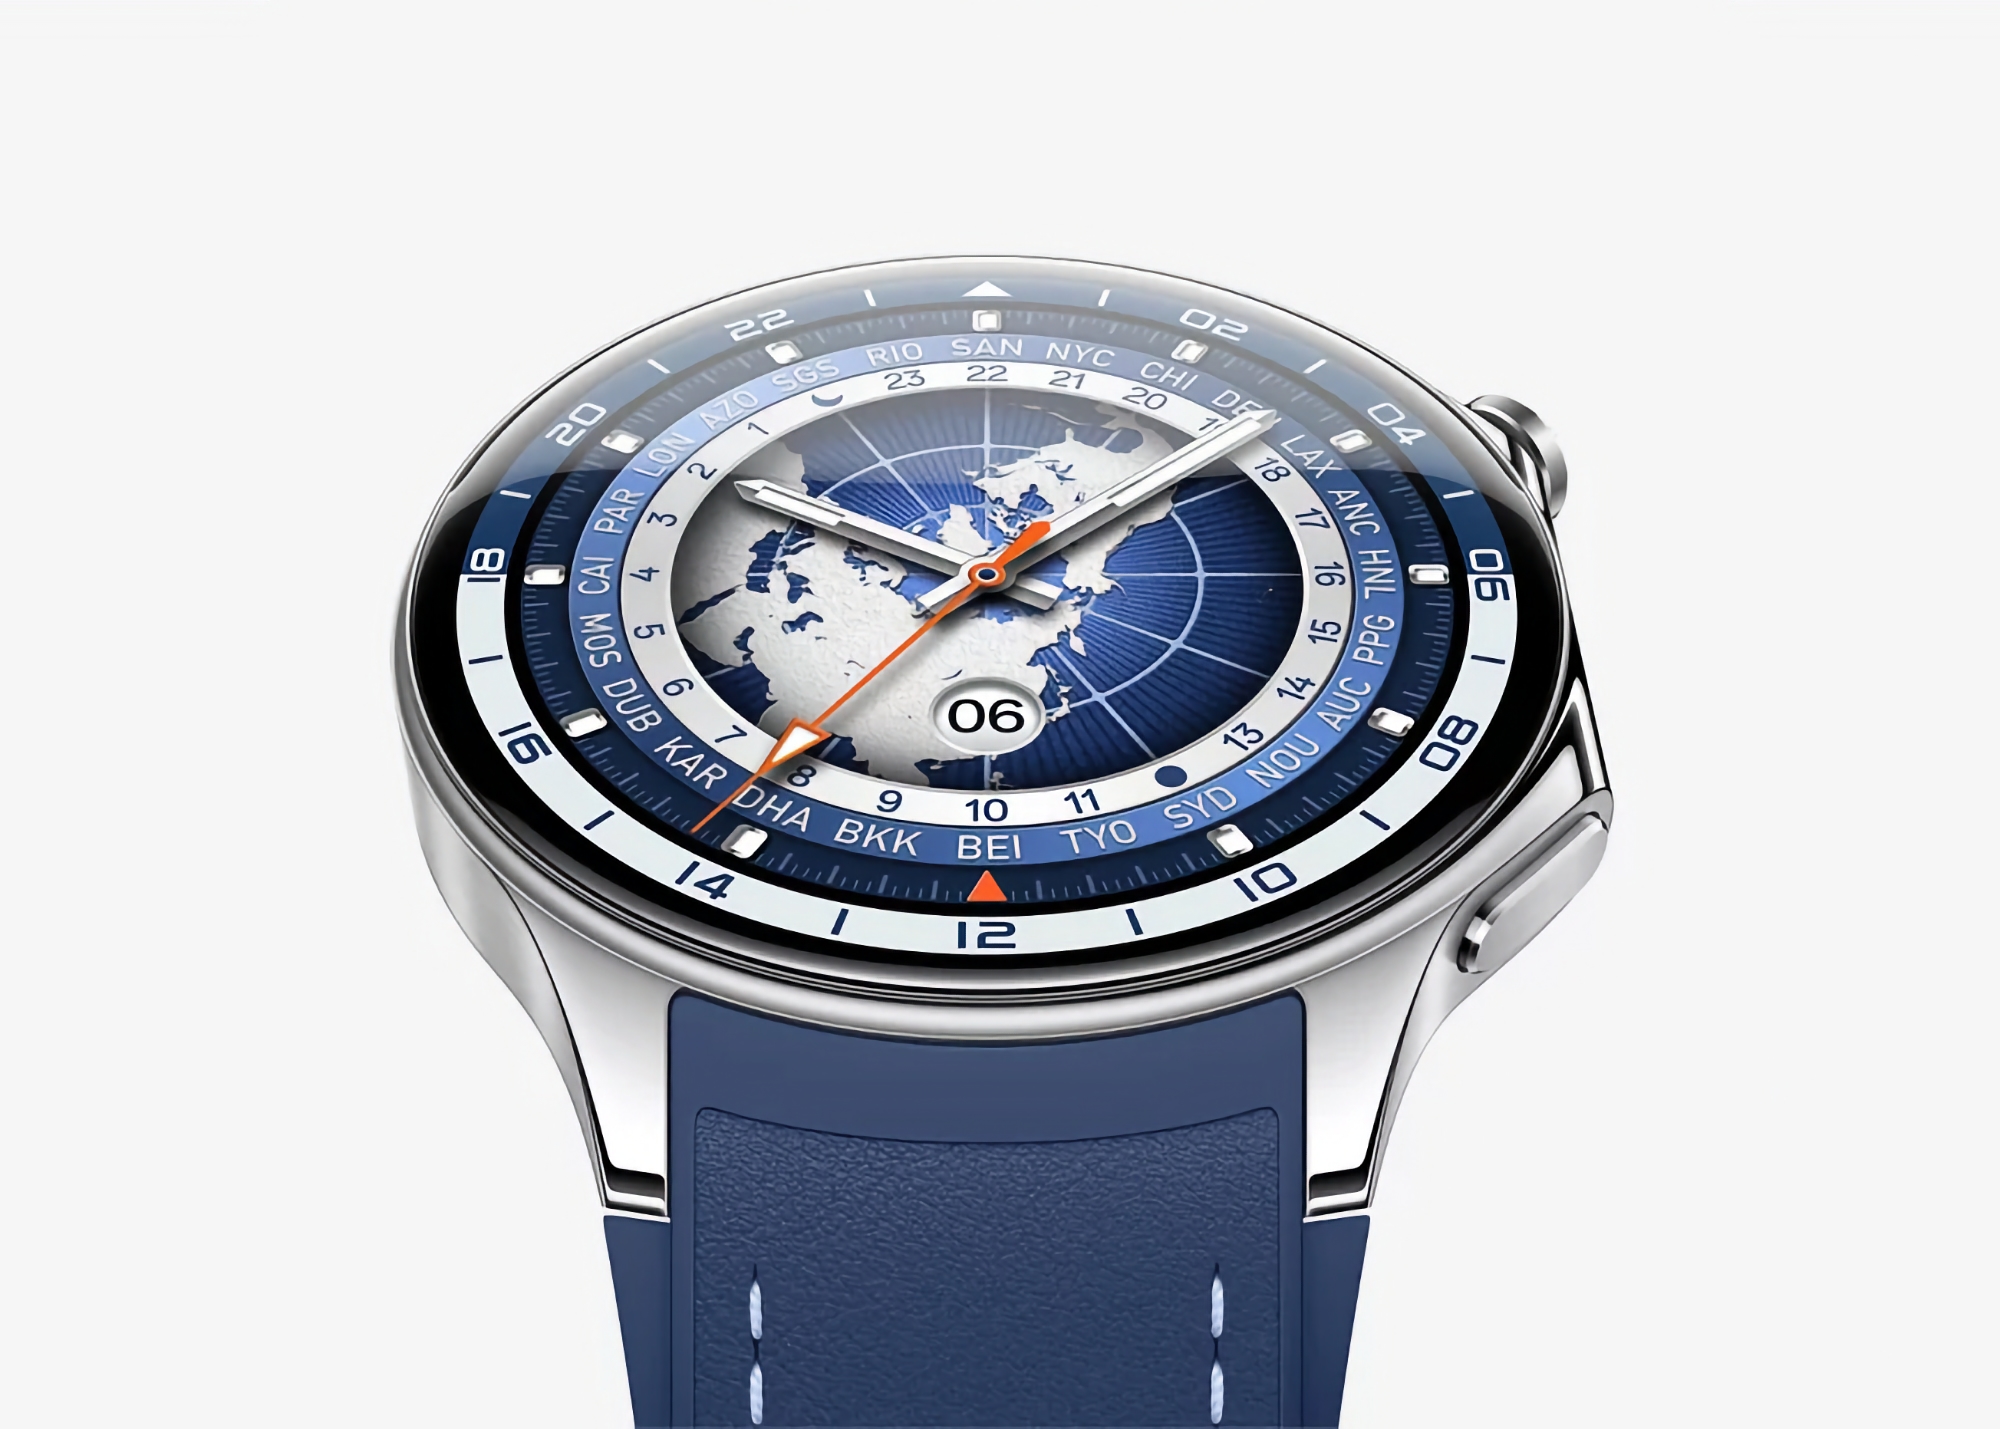 OPPO Watch X mit eSIM-Unterstützung und ColorOS Watch an Bord wird am 22. März in China eingeführt